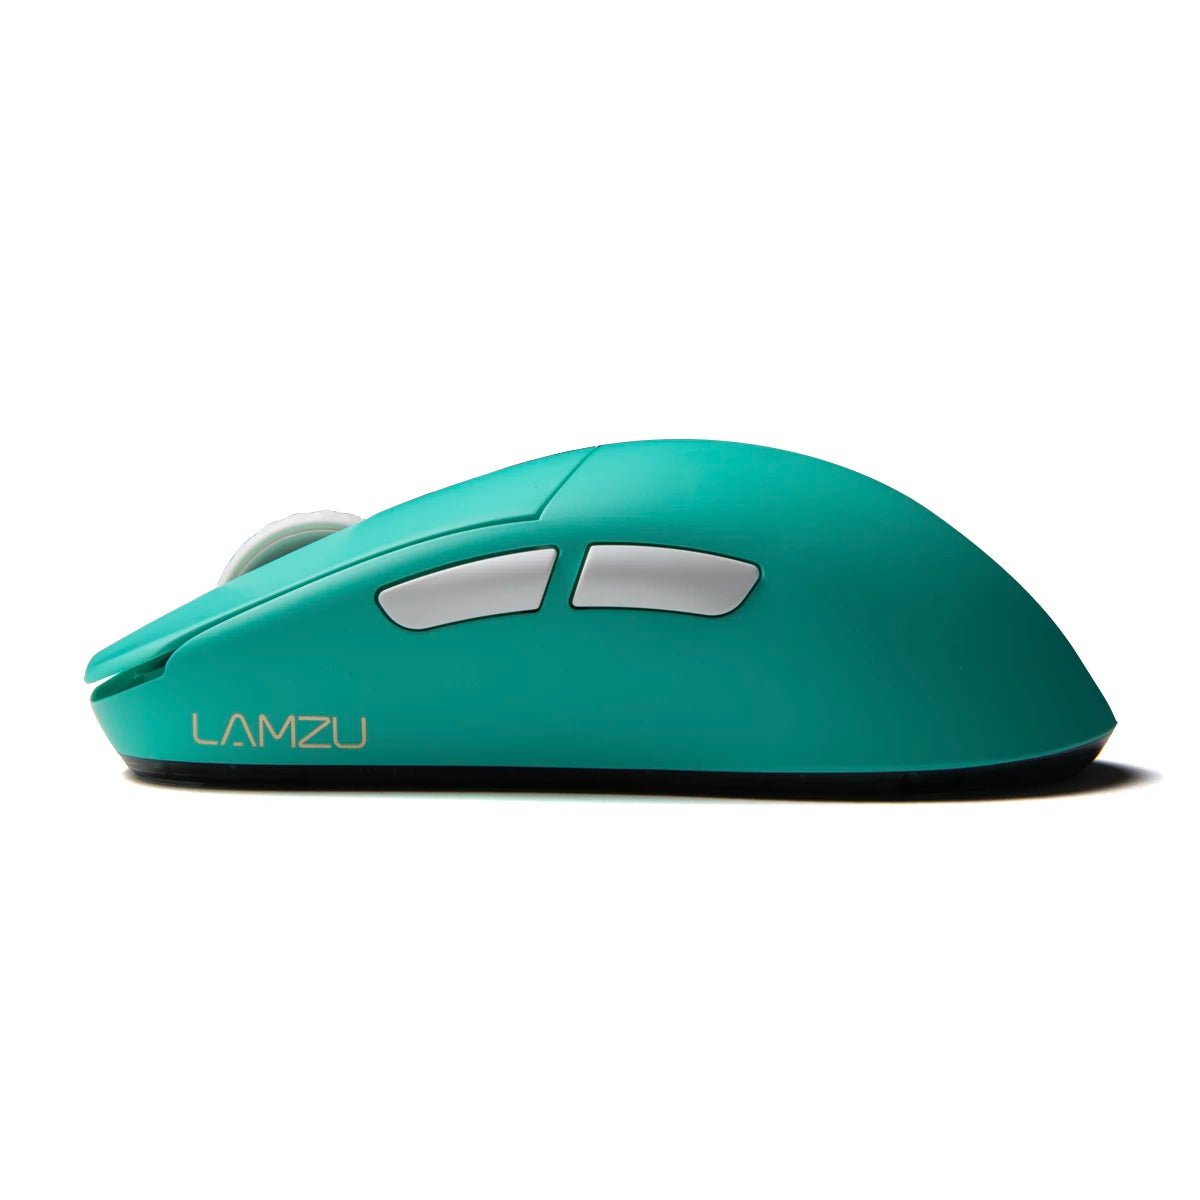 Lamzu Atlantis Mini Pro Superlight Gaming Mouse